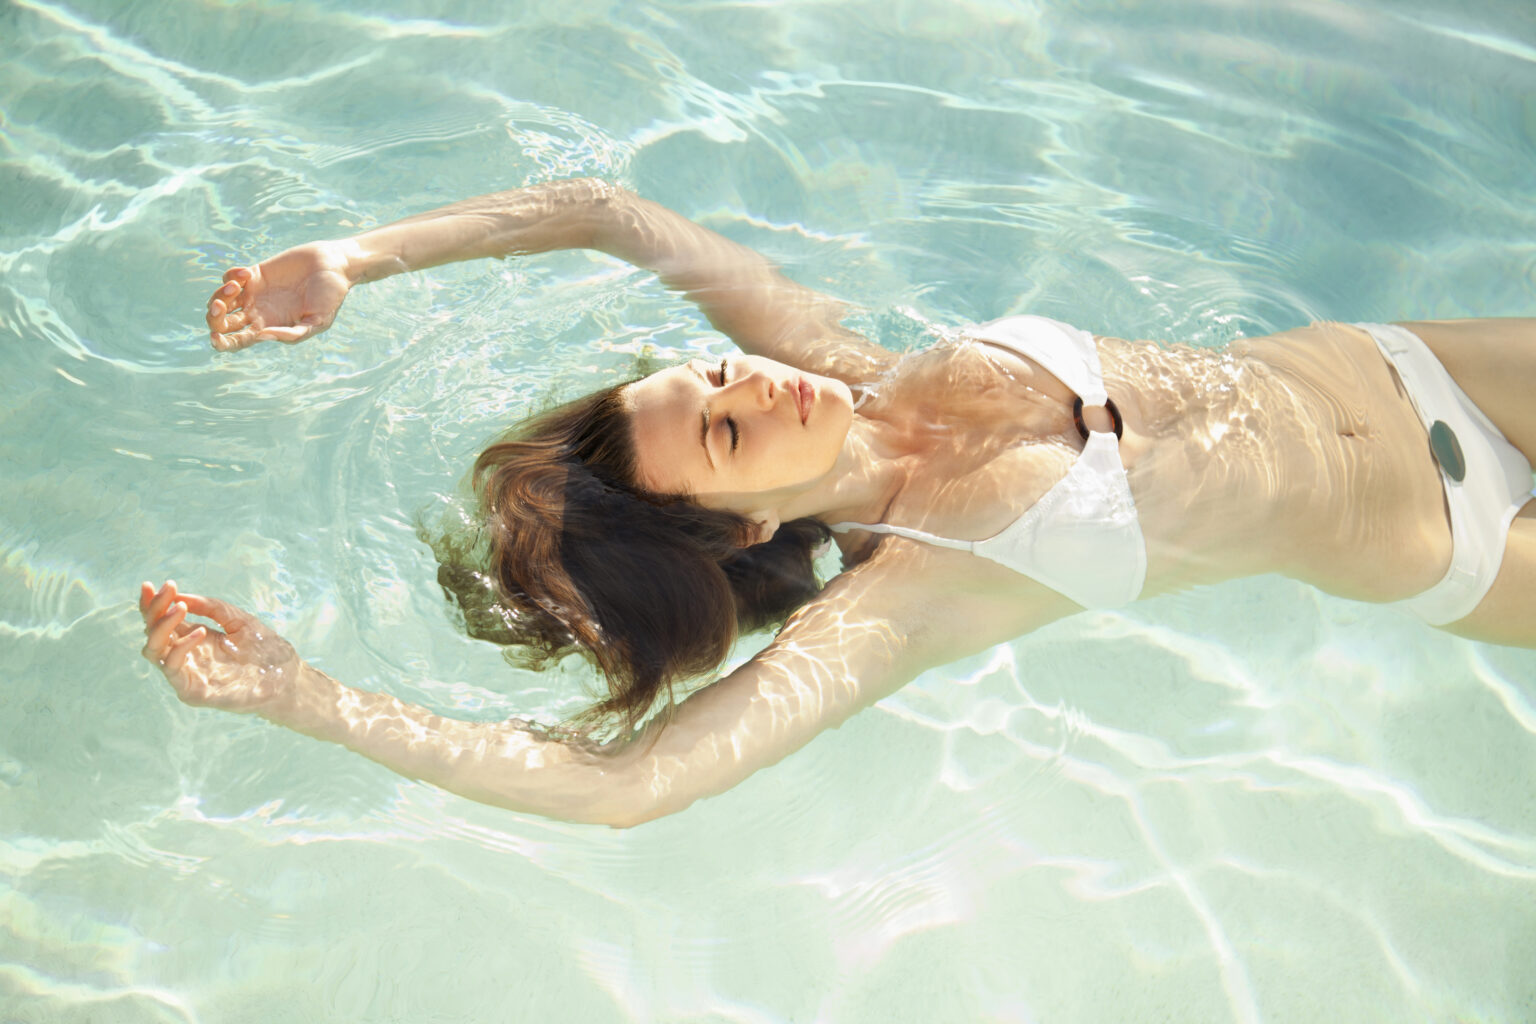 Floating ist eine Kunst der Entspannung. Das Bild zeigt eine Frau, die in kristallklarem Wasser schwebt, umgeben von sanften Wellen und schimmernden Sonnenstrahlen. Dies verkörpert das Gefühl von Schwerelosigkeit und innerem Frieden. Bei Wellness Wiesbaden können Sie diese tiefe Entspannung inmitten von Wiesbaden erleben.